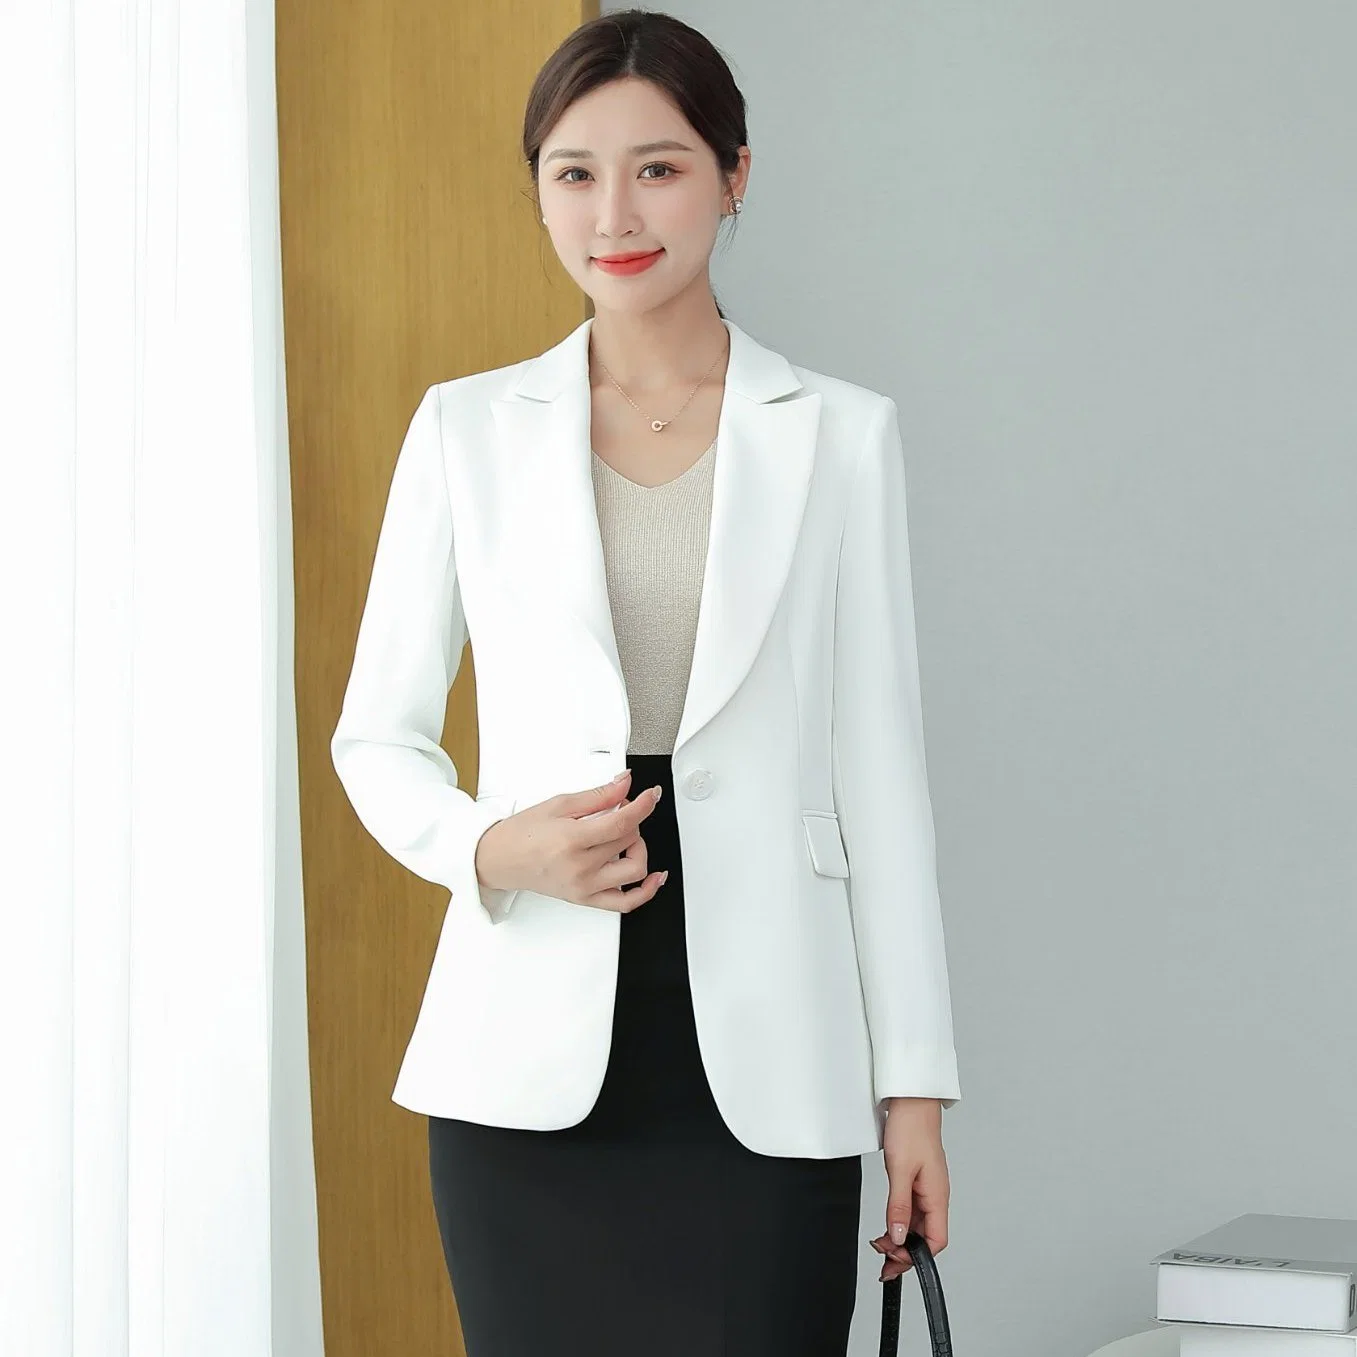 Senhoras Fashion Suit Business Suit White